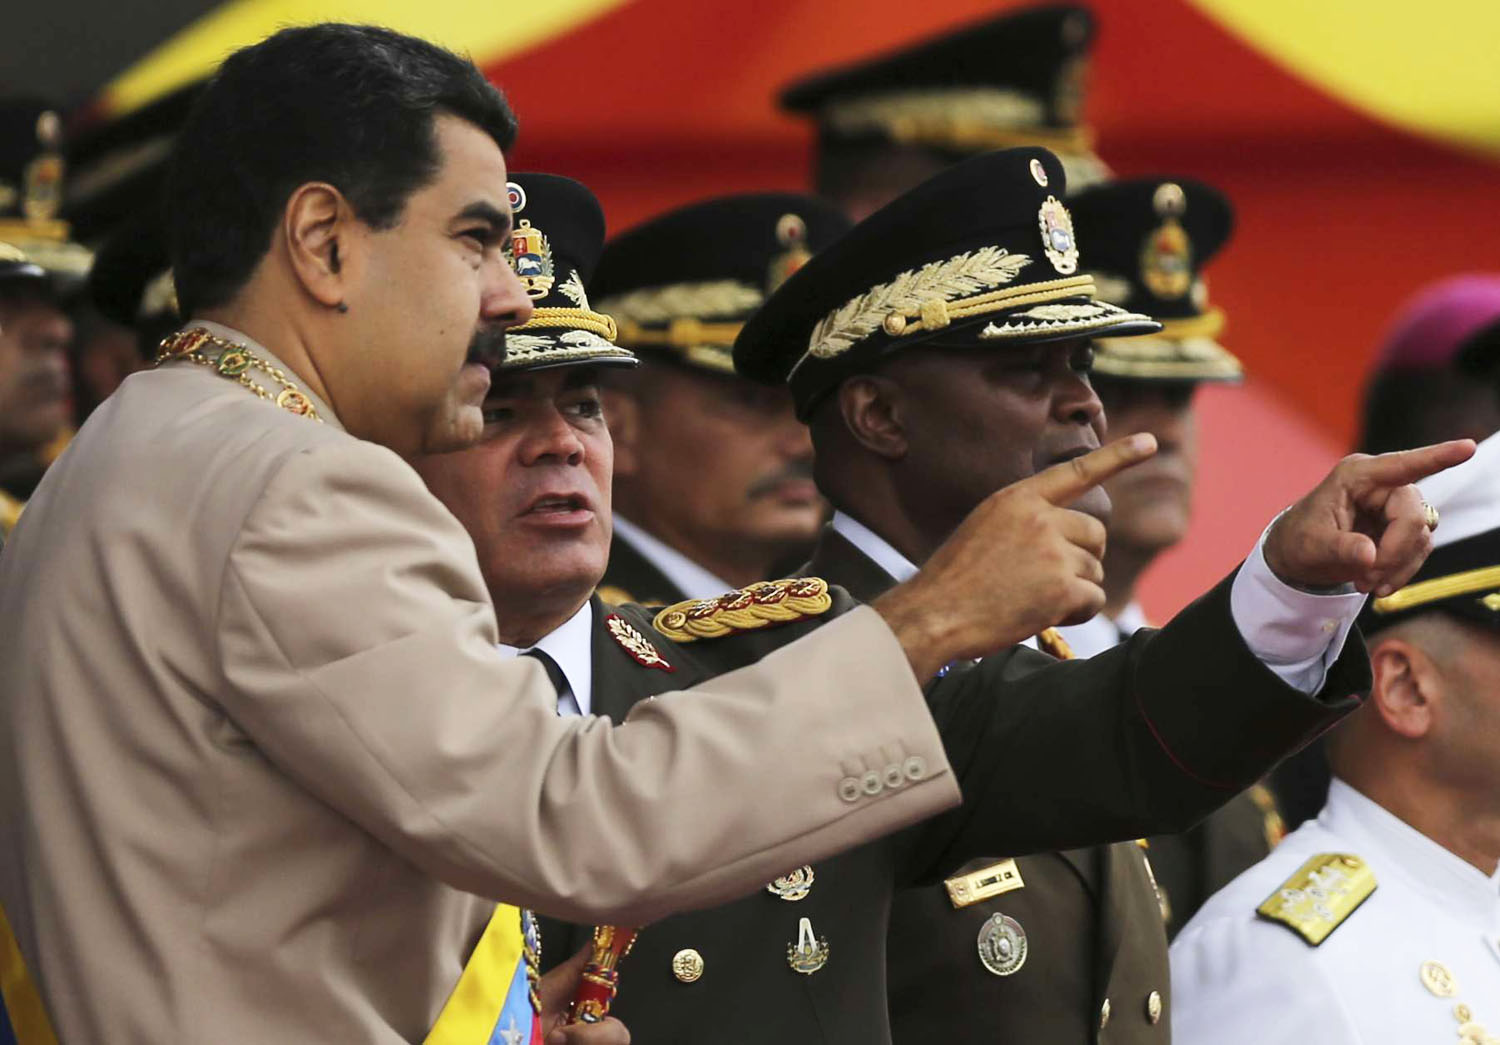 مادورو للجيش: لا تكونوا خونة أبدا بل أوفياء دائما